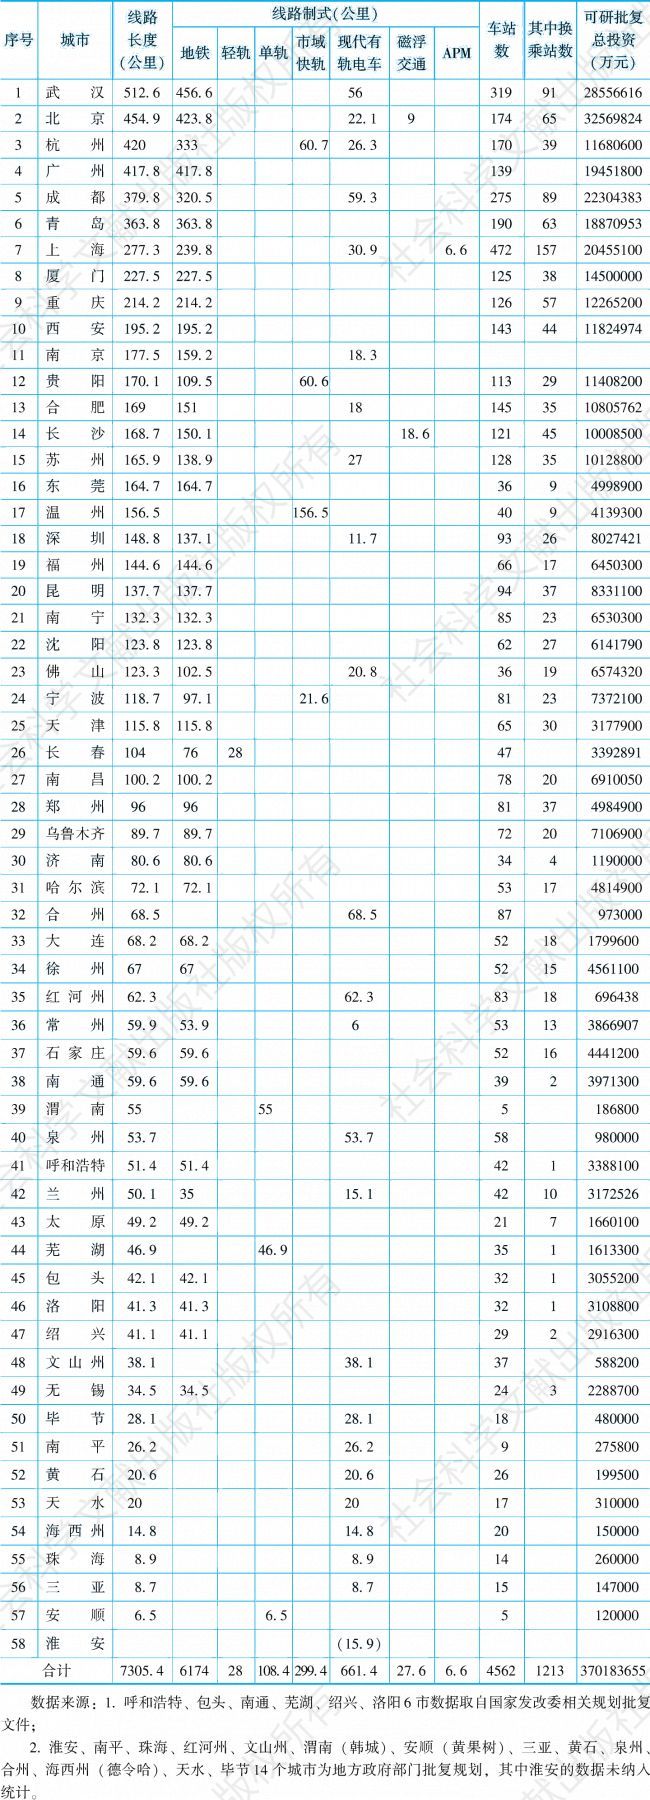 表3-12 2016年中国各城市城轨交通规划线路统计汇总